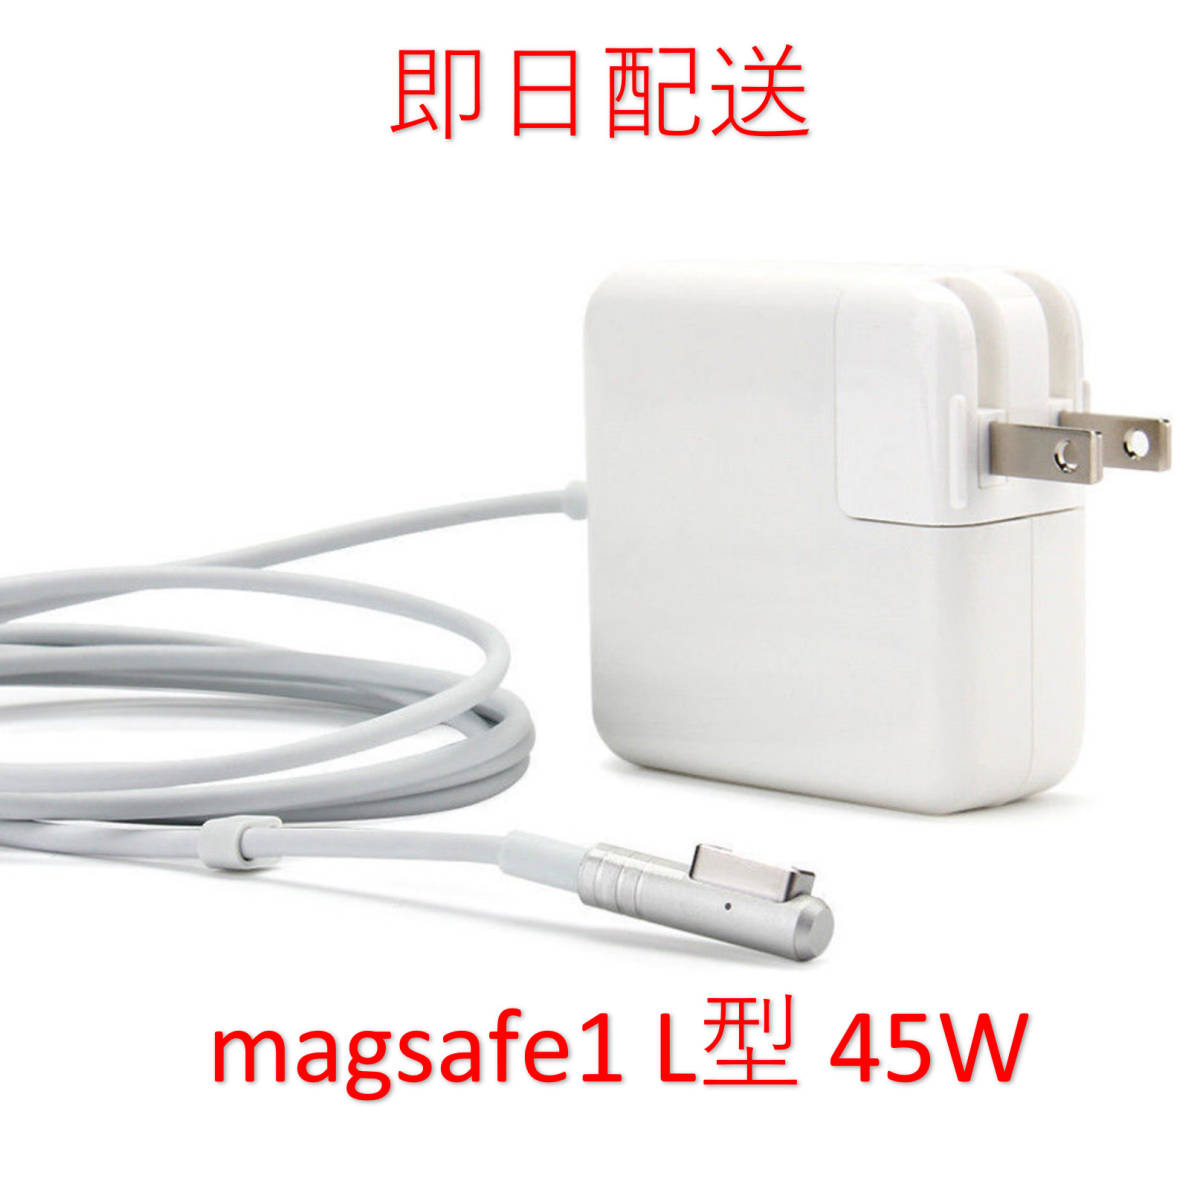 【業界最安値】【送料無料】L型 Magsafe1 45W 新品 充電器 MacBook Air 11インチ 13インチ 2008 2009 2010 2011 ◆ 電源 ACアダプター